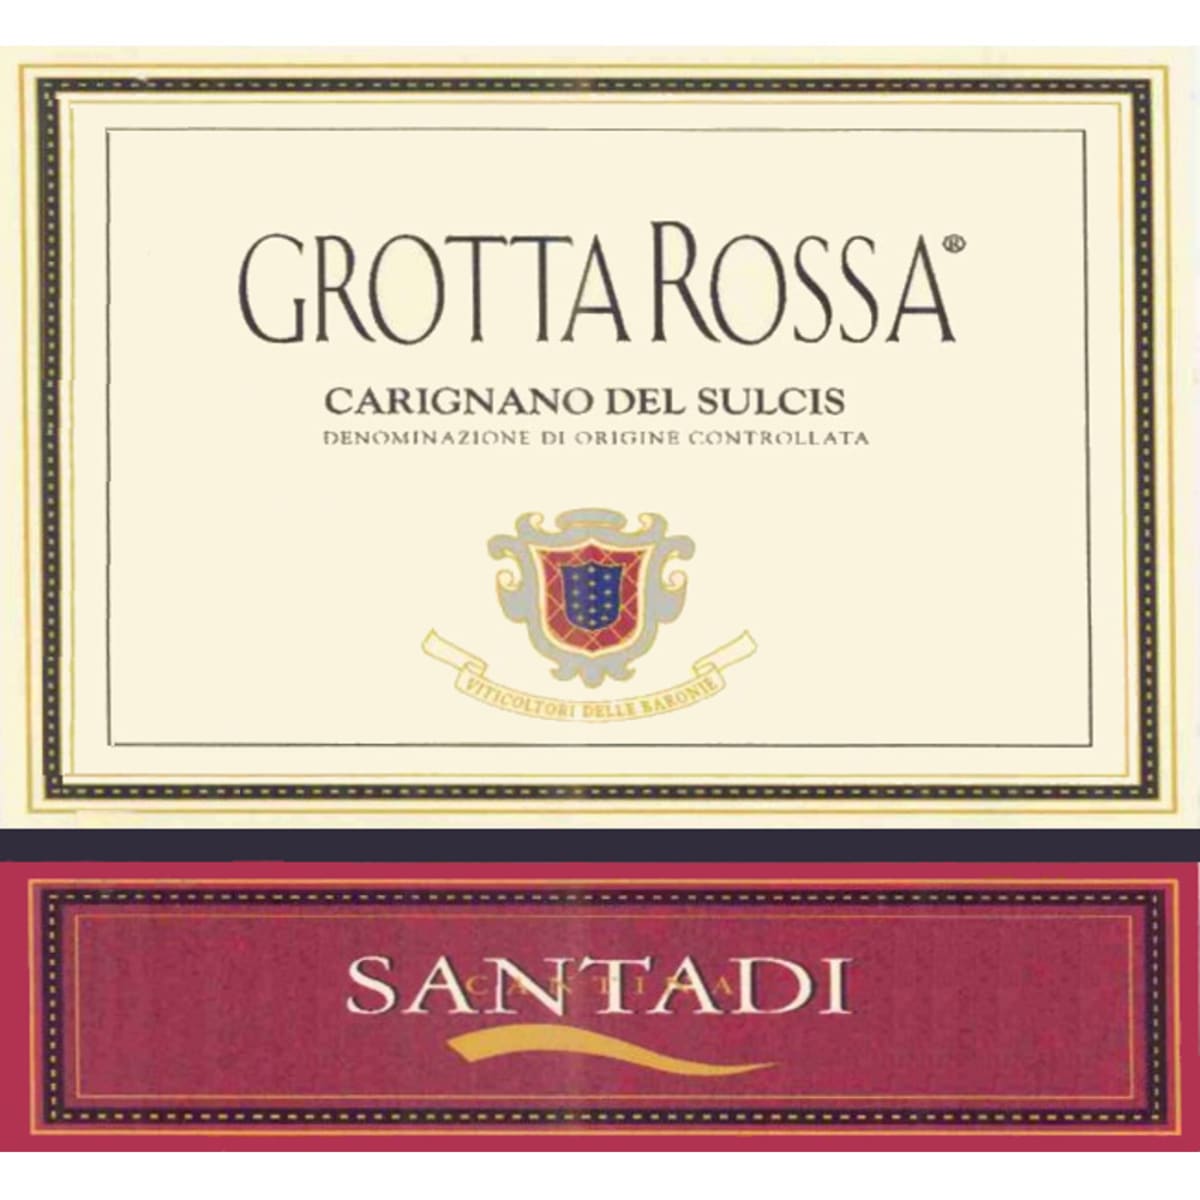 Santadi Carignano del Sulcis Grotta Rossa 2008 Front Label